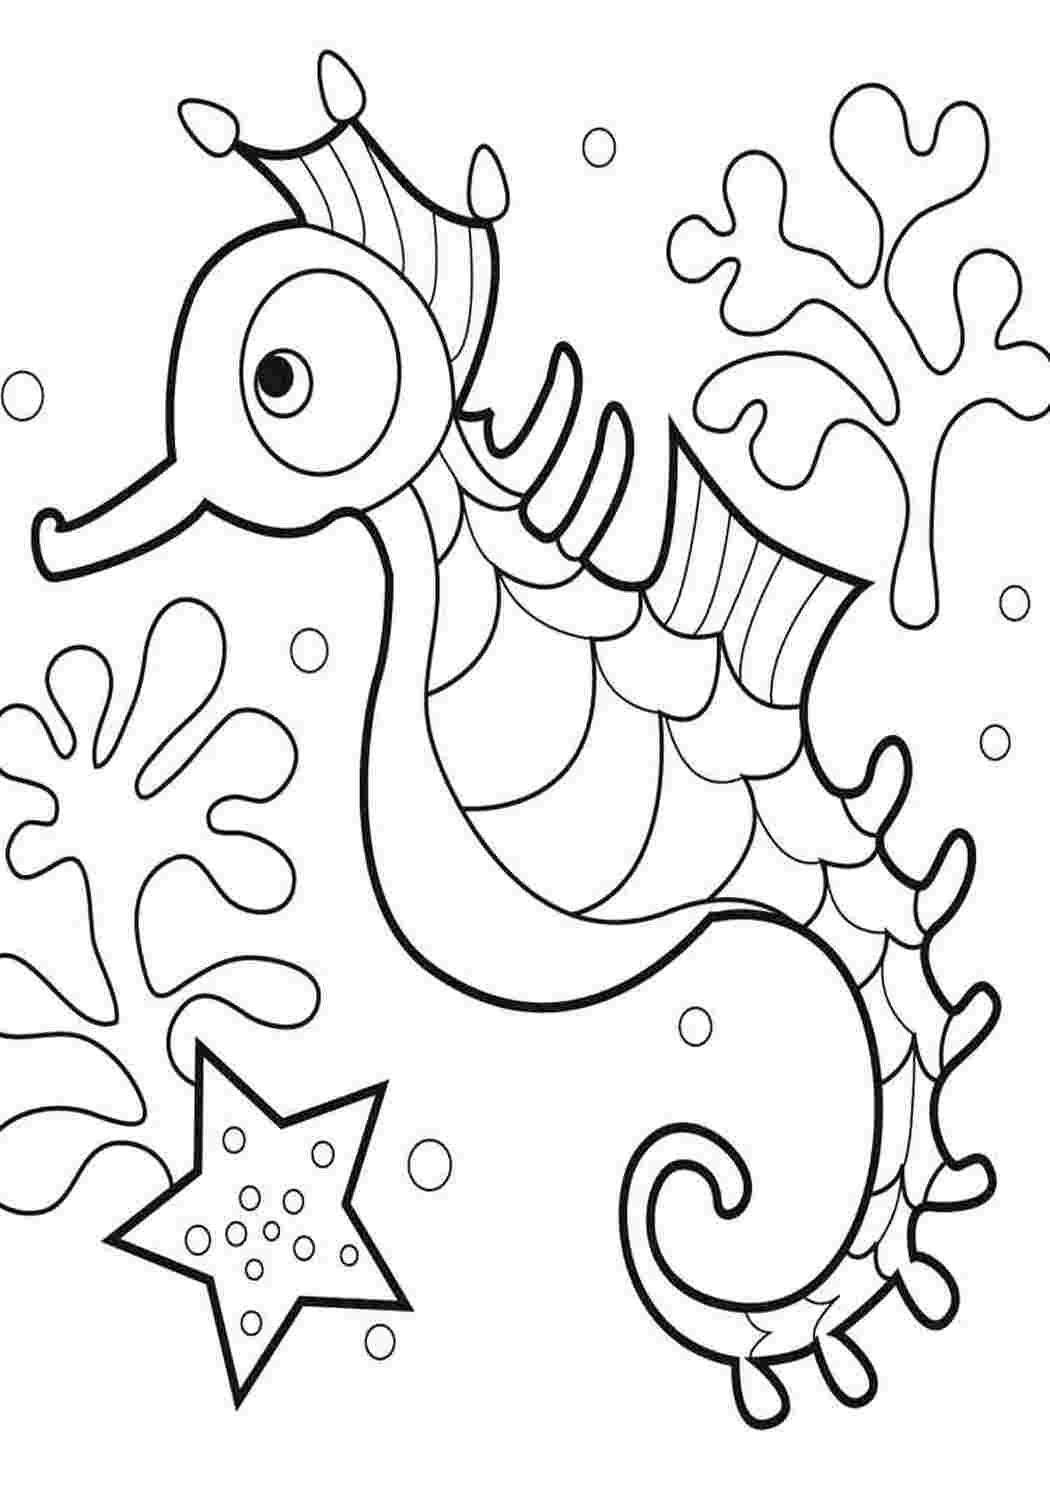 Раскраски раскраски животных раскраска морской конек. Бесплатные раскраски. раскраски животных раскраска морской конек. Обучающие раскраски.